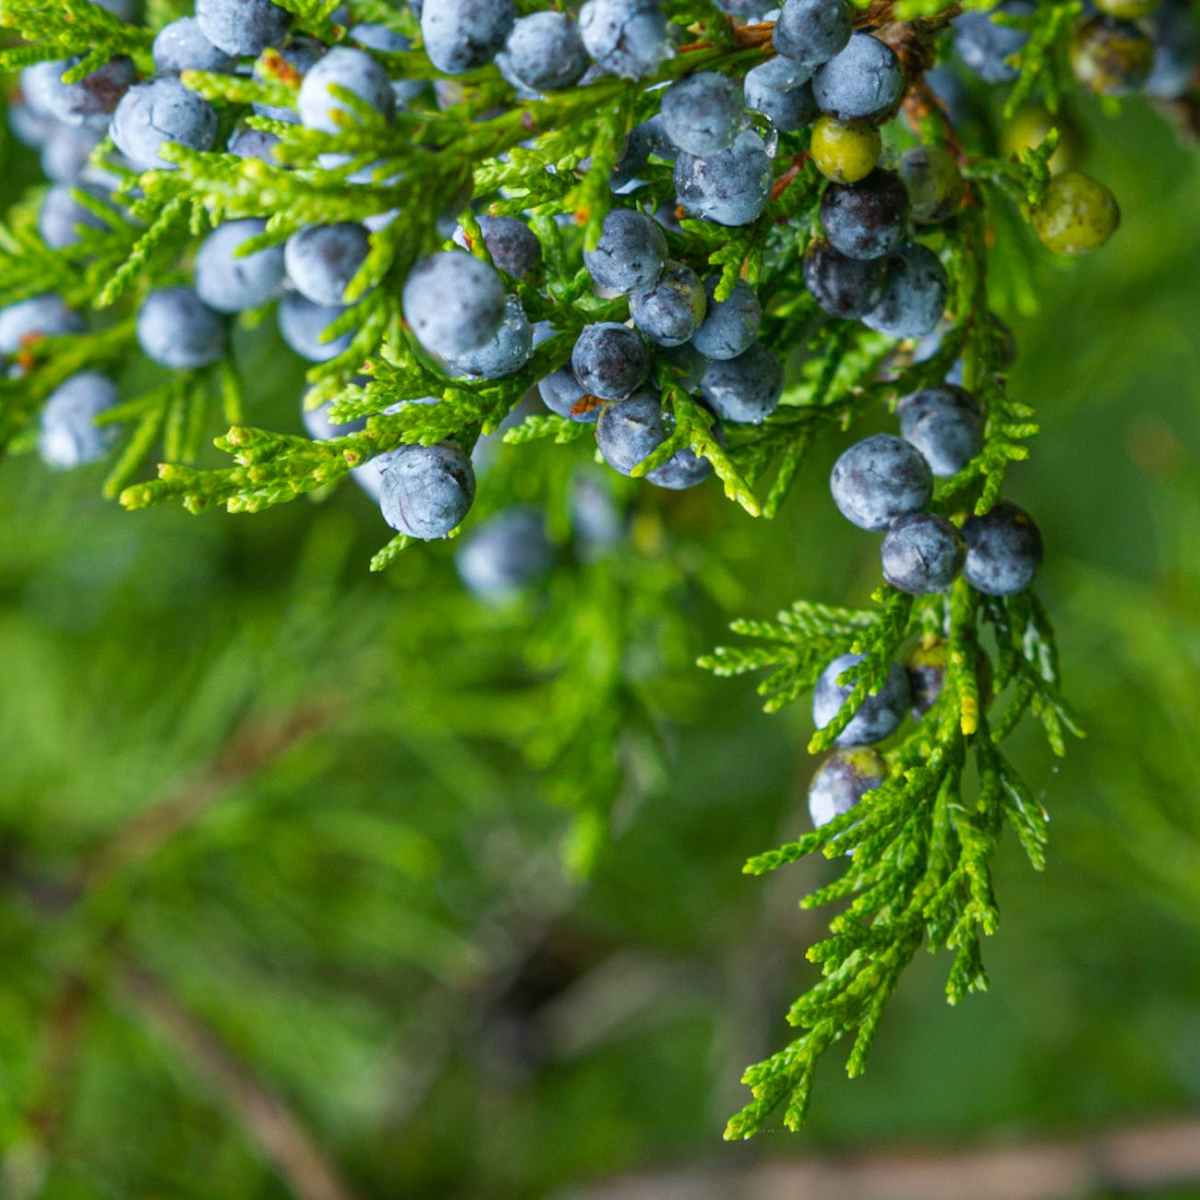 September: Juniper Berries